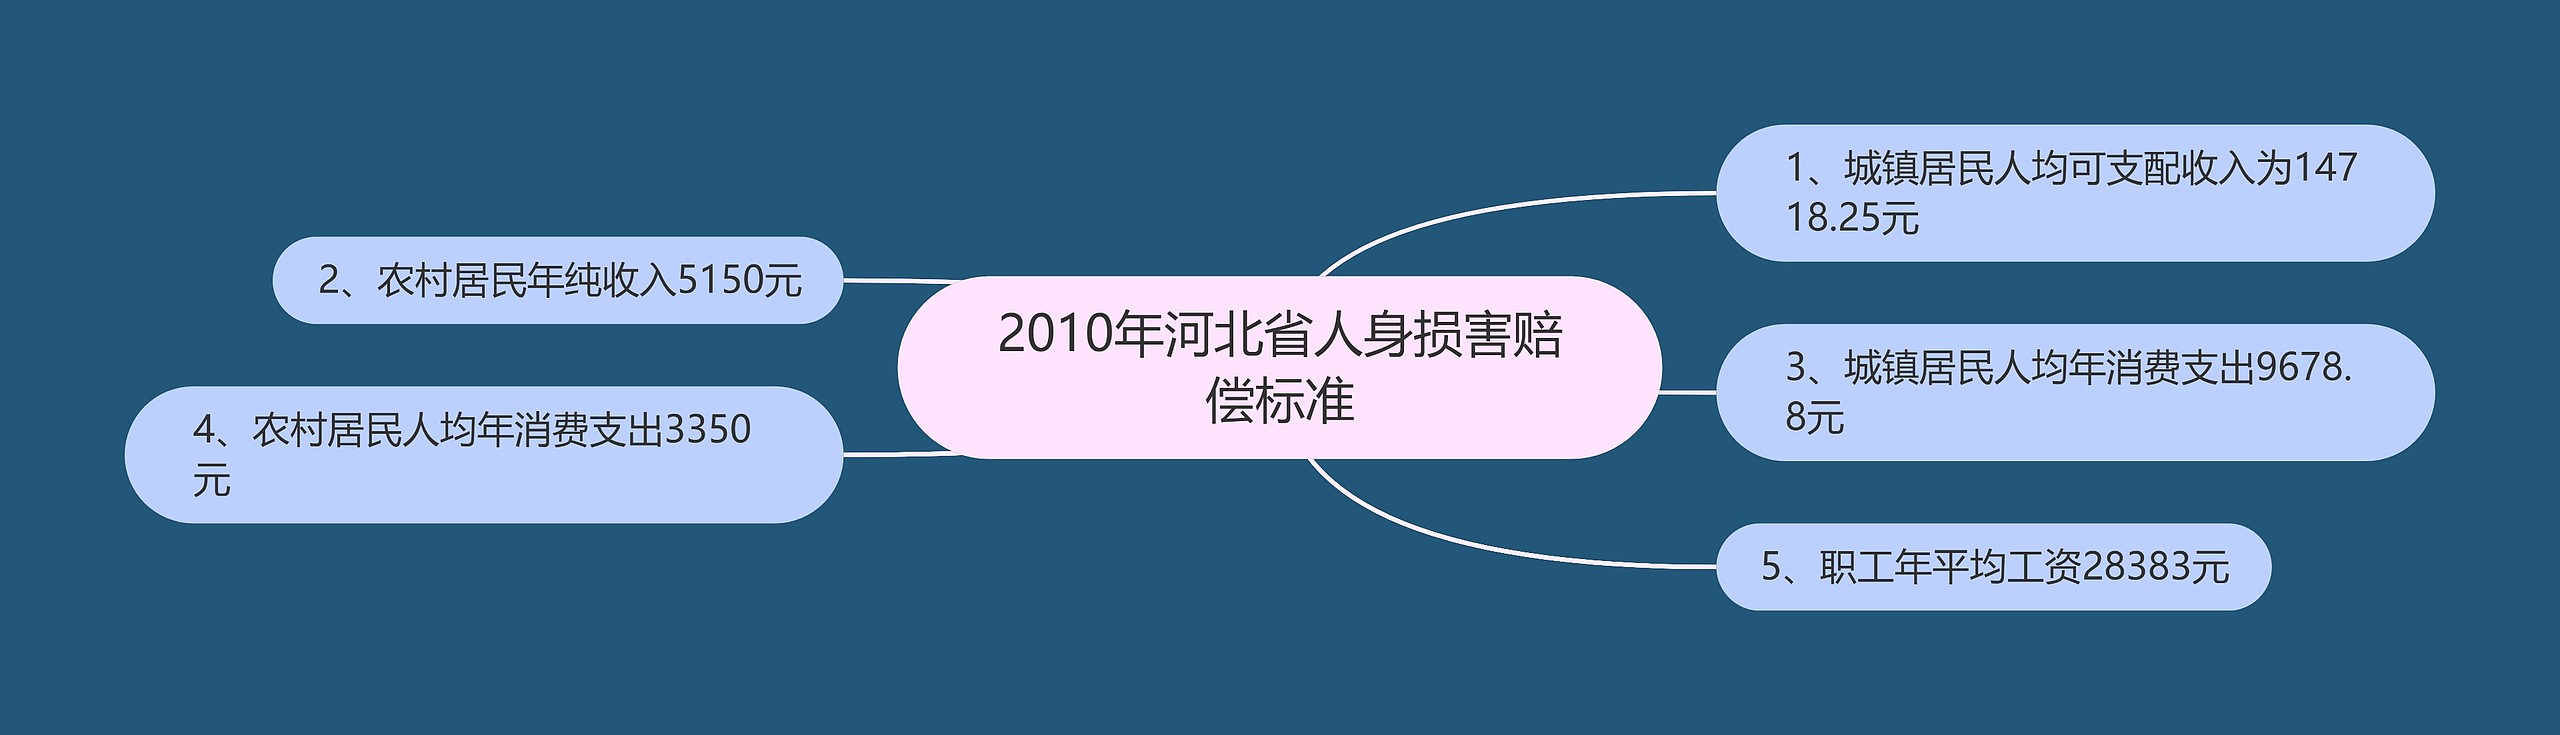 2010年河北省人身损害赔偿标准